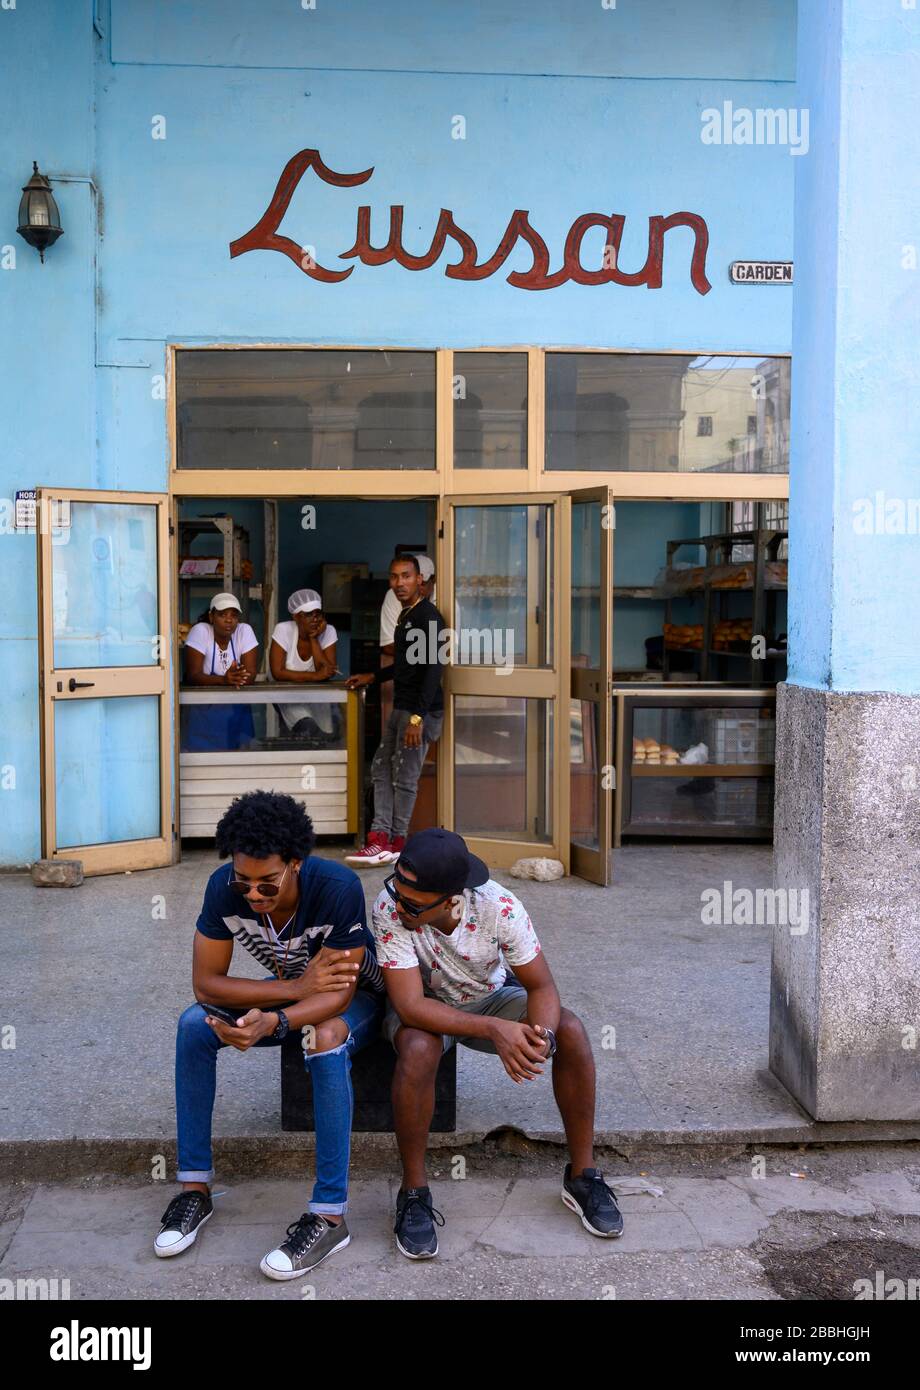 Bäckerei und Männer auf Handy, Havanna Vieja, Kuba Stockfoto